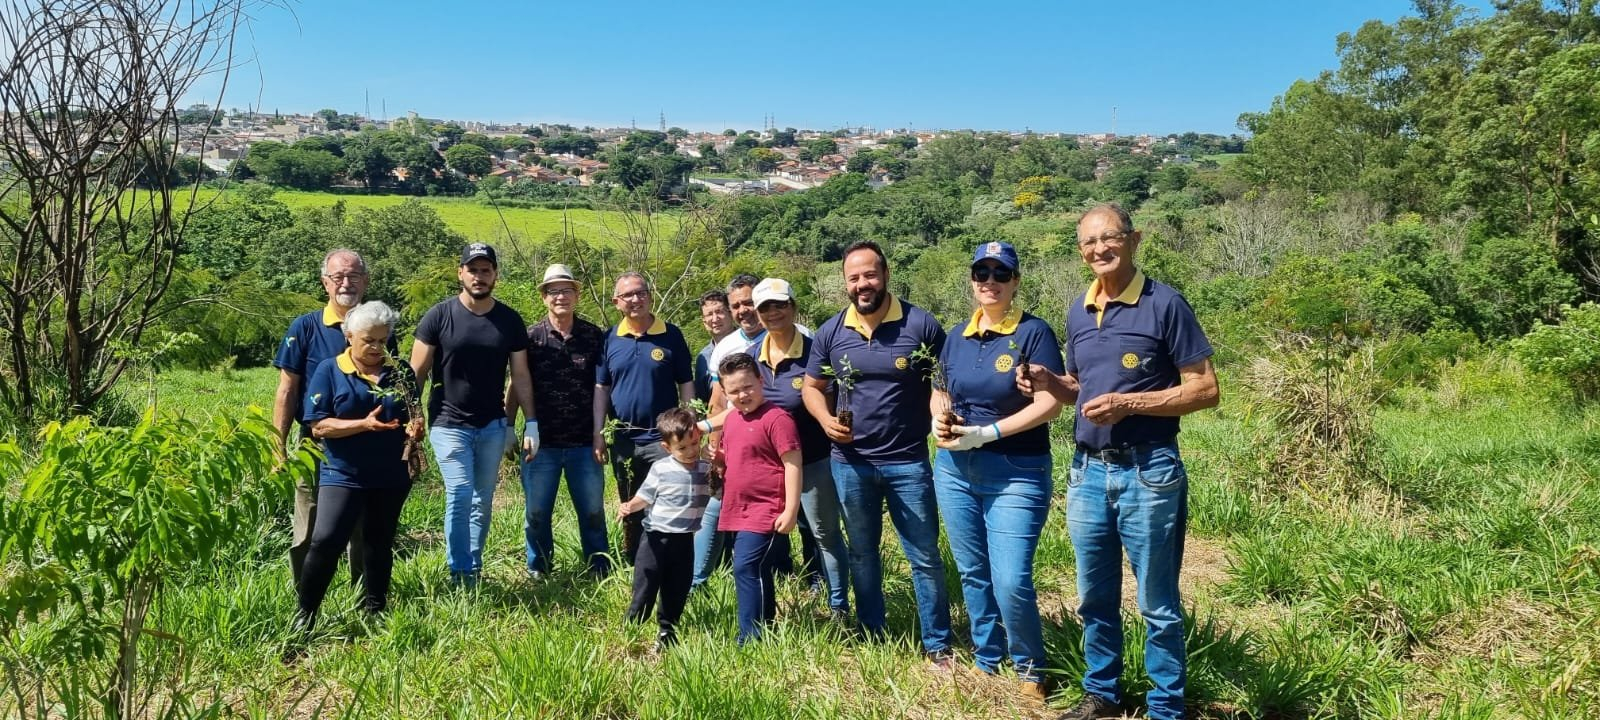 Prefeitura participa do plantio de 500 mudas de árvores nativas em projeto do Rotary Clube Beija-Flor